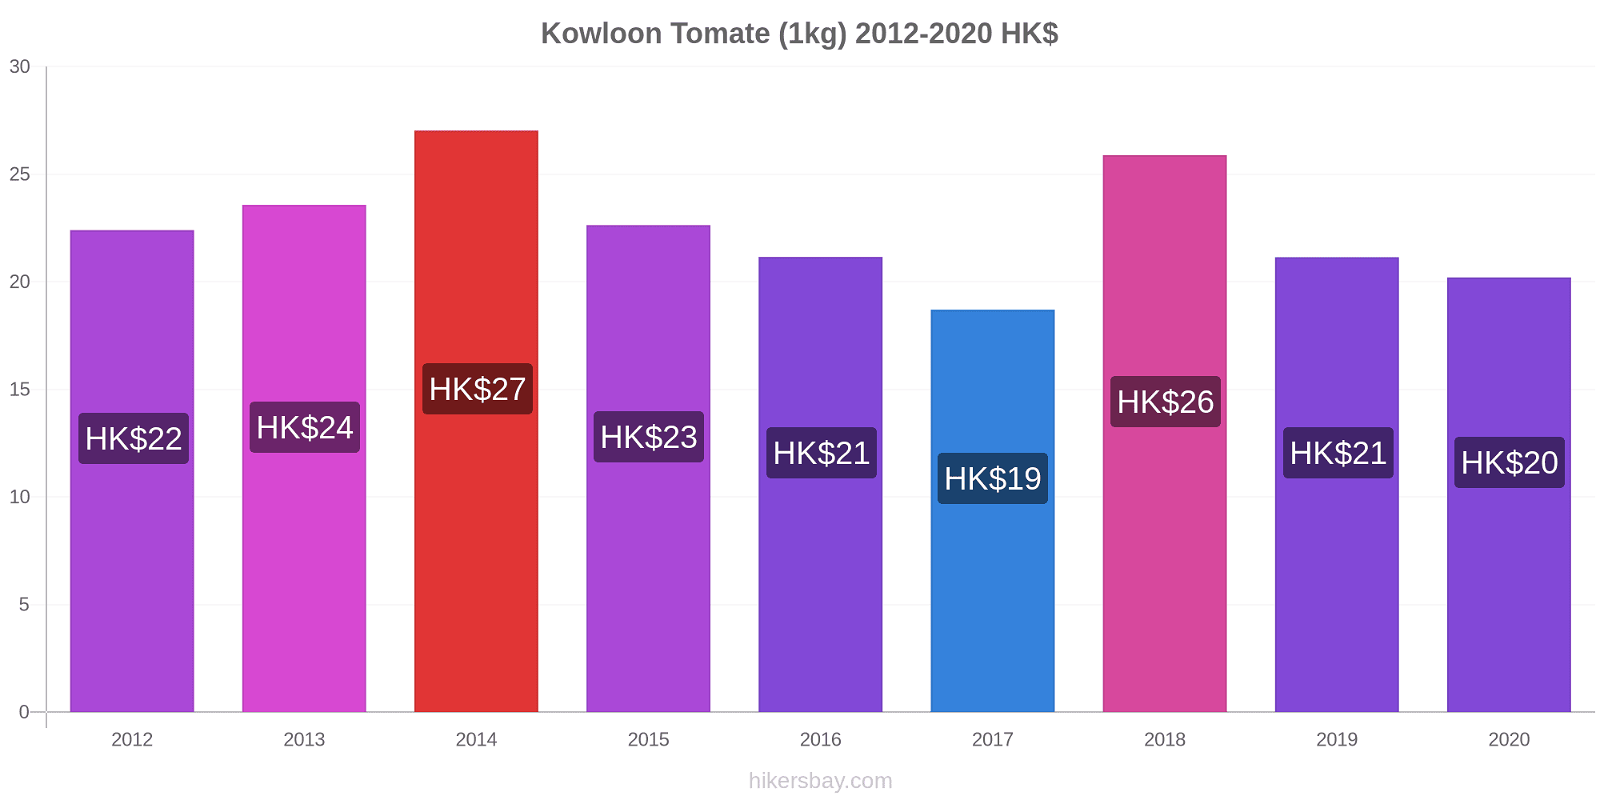 Kowloon cambios de precios Tomate (1kg) hikersbay.com